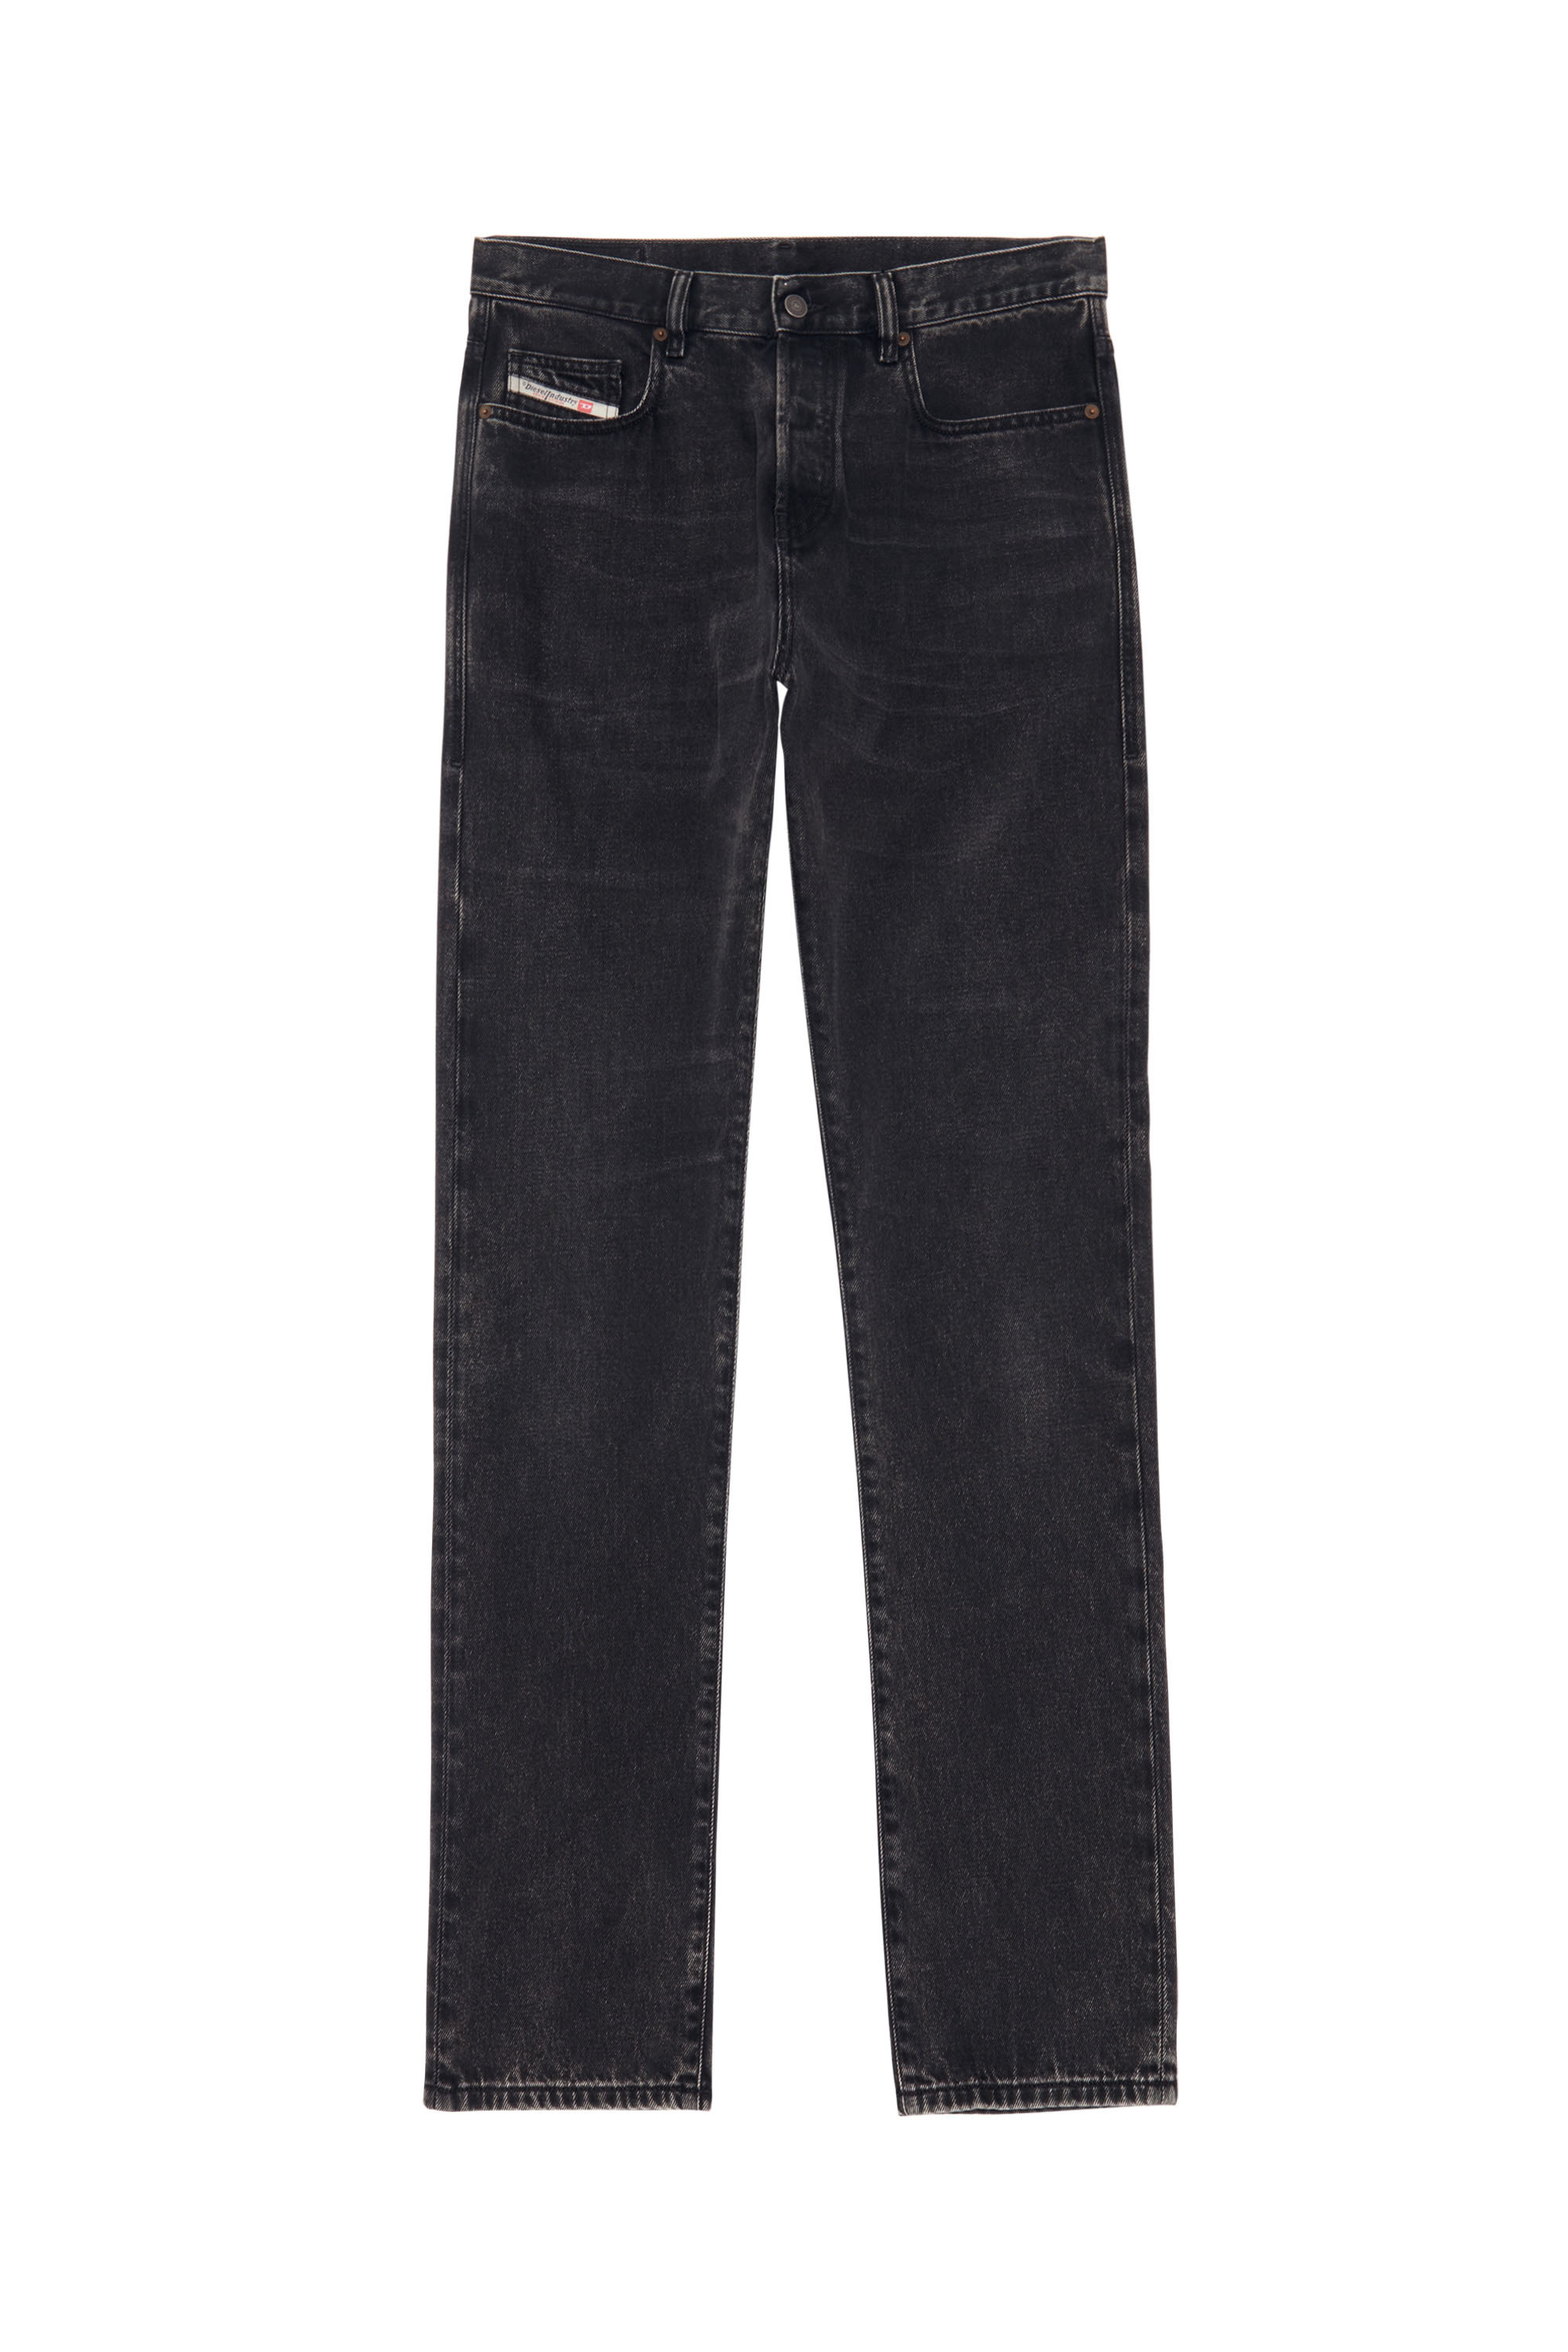 2015 BABHILA Z870G Skinny Jeans, Noir/Gris foncé - Jeans